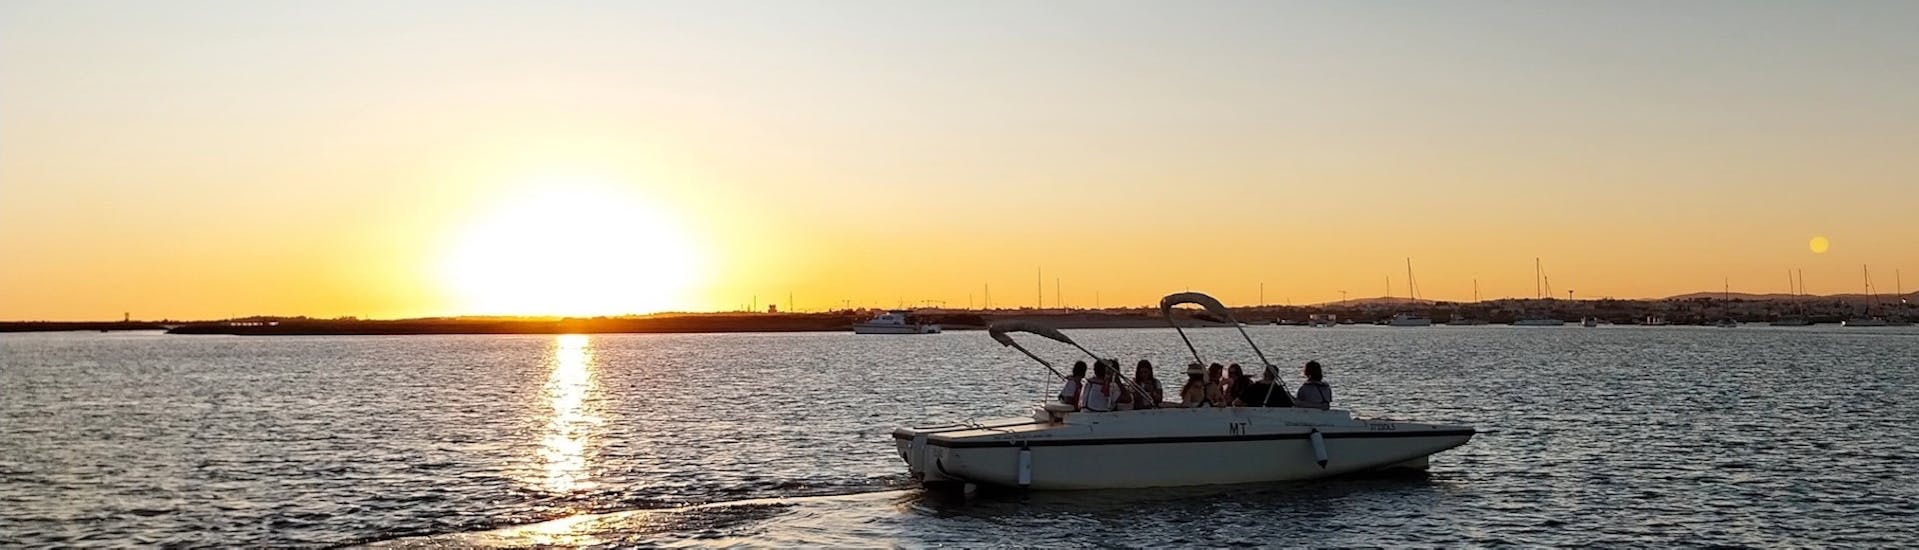 Een groep deelnemers geniet van een prachtige zonsondergang over de Ria Formosa tijdens een zonsondergangboottocht vanuit Faro langs de rivier met Lands Algarve.